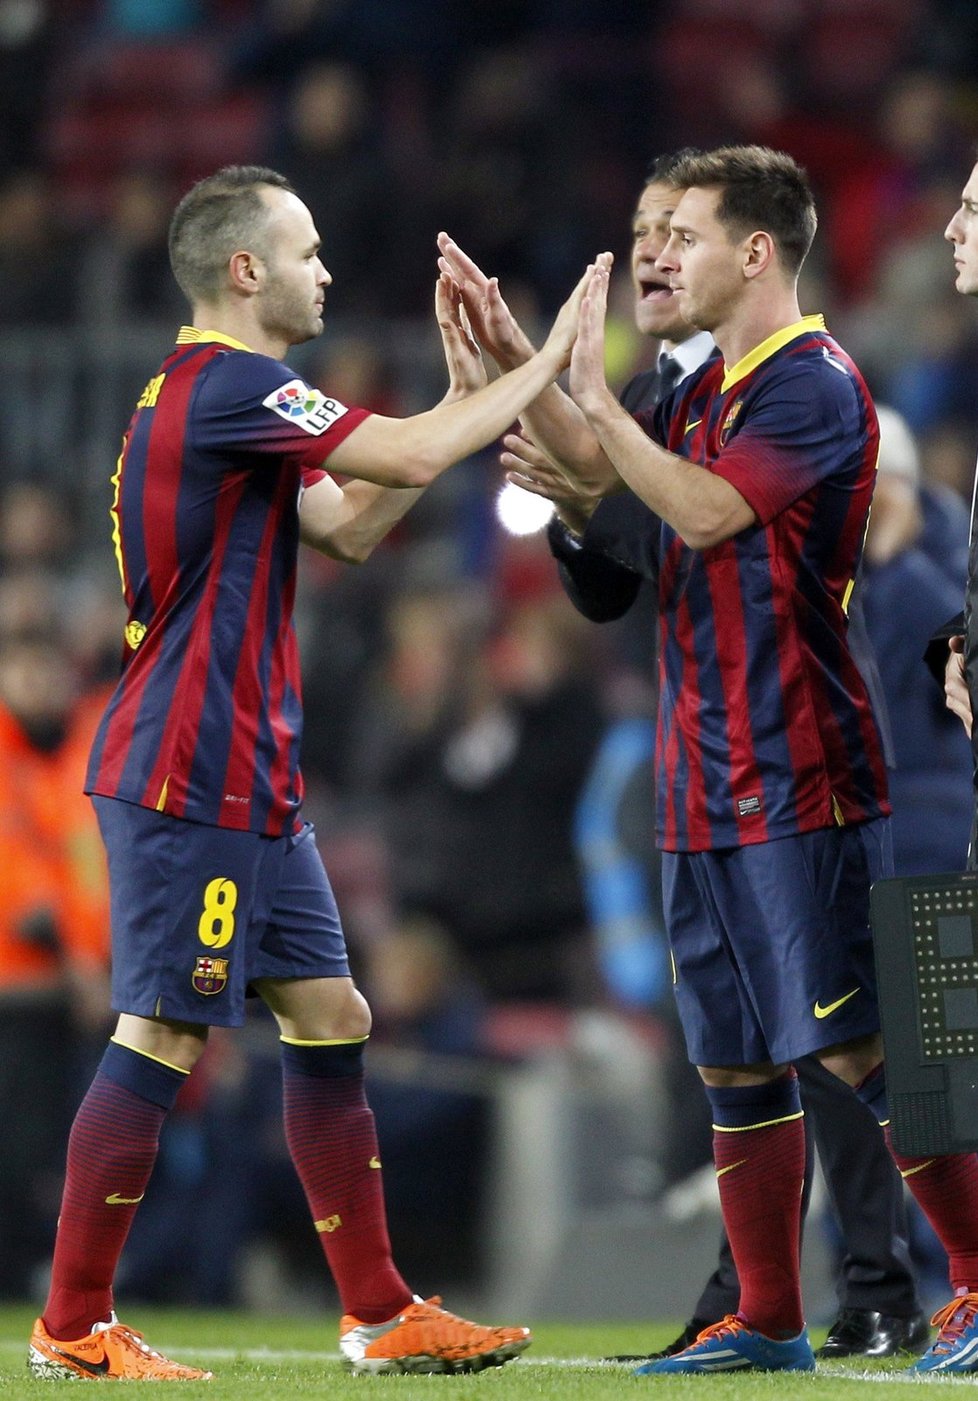 Fanoušci Barcelony se dočkali. Miláček Messi po dvou měsících zznovu vyběhl na hřiště k ostrému zápasu